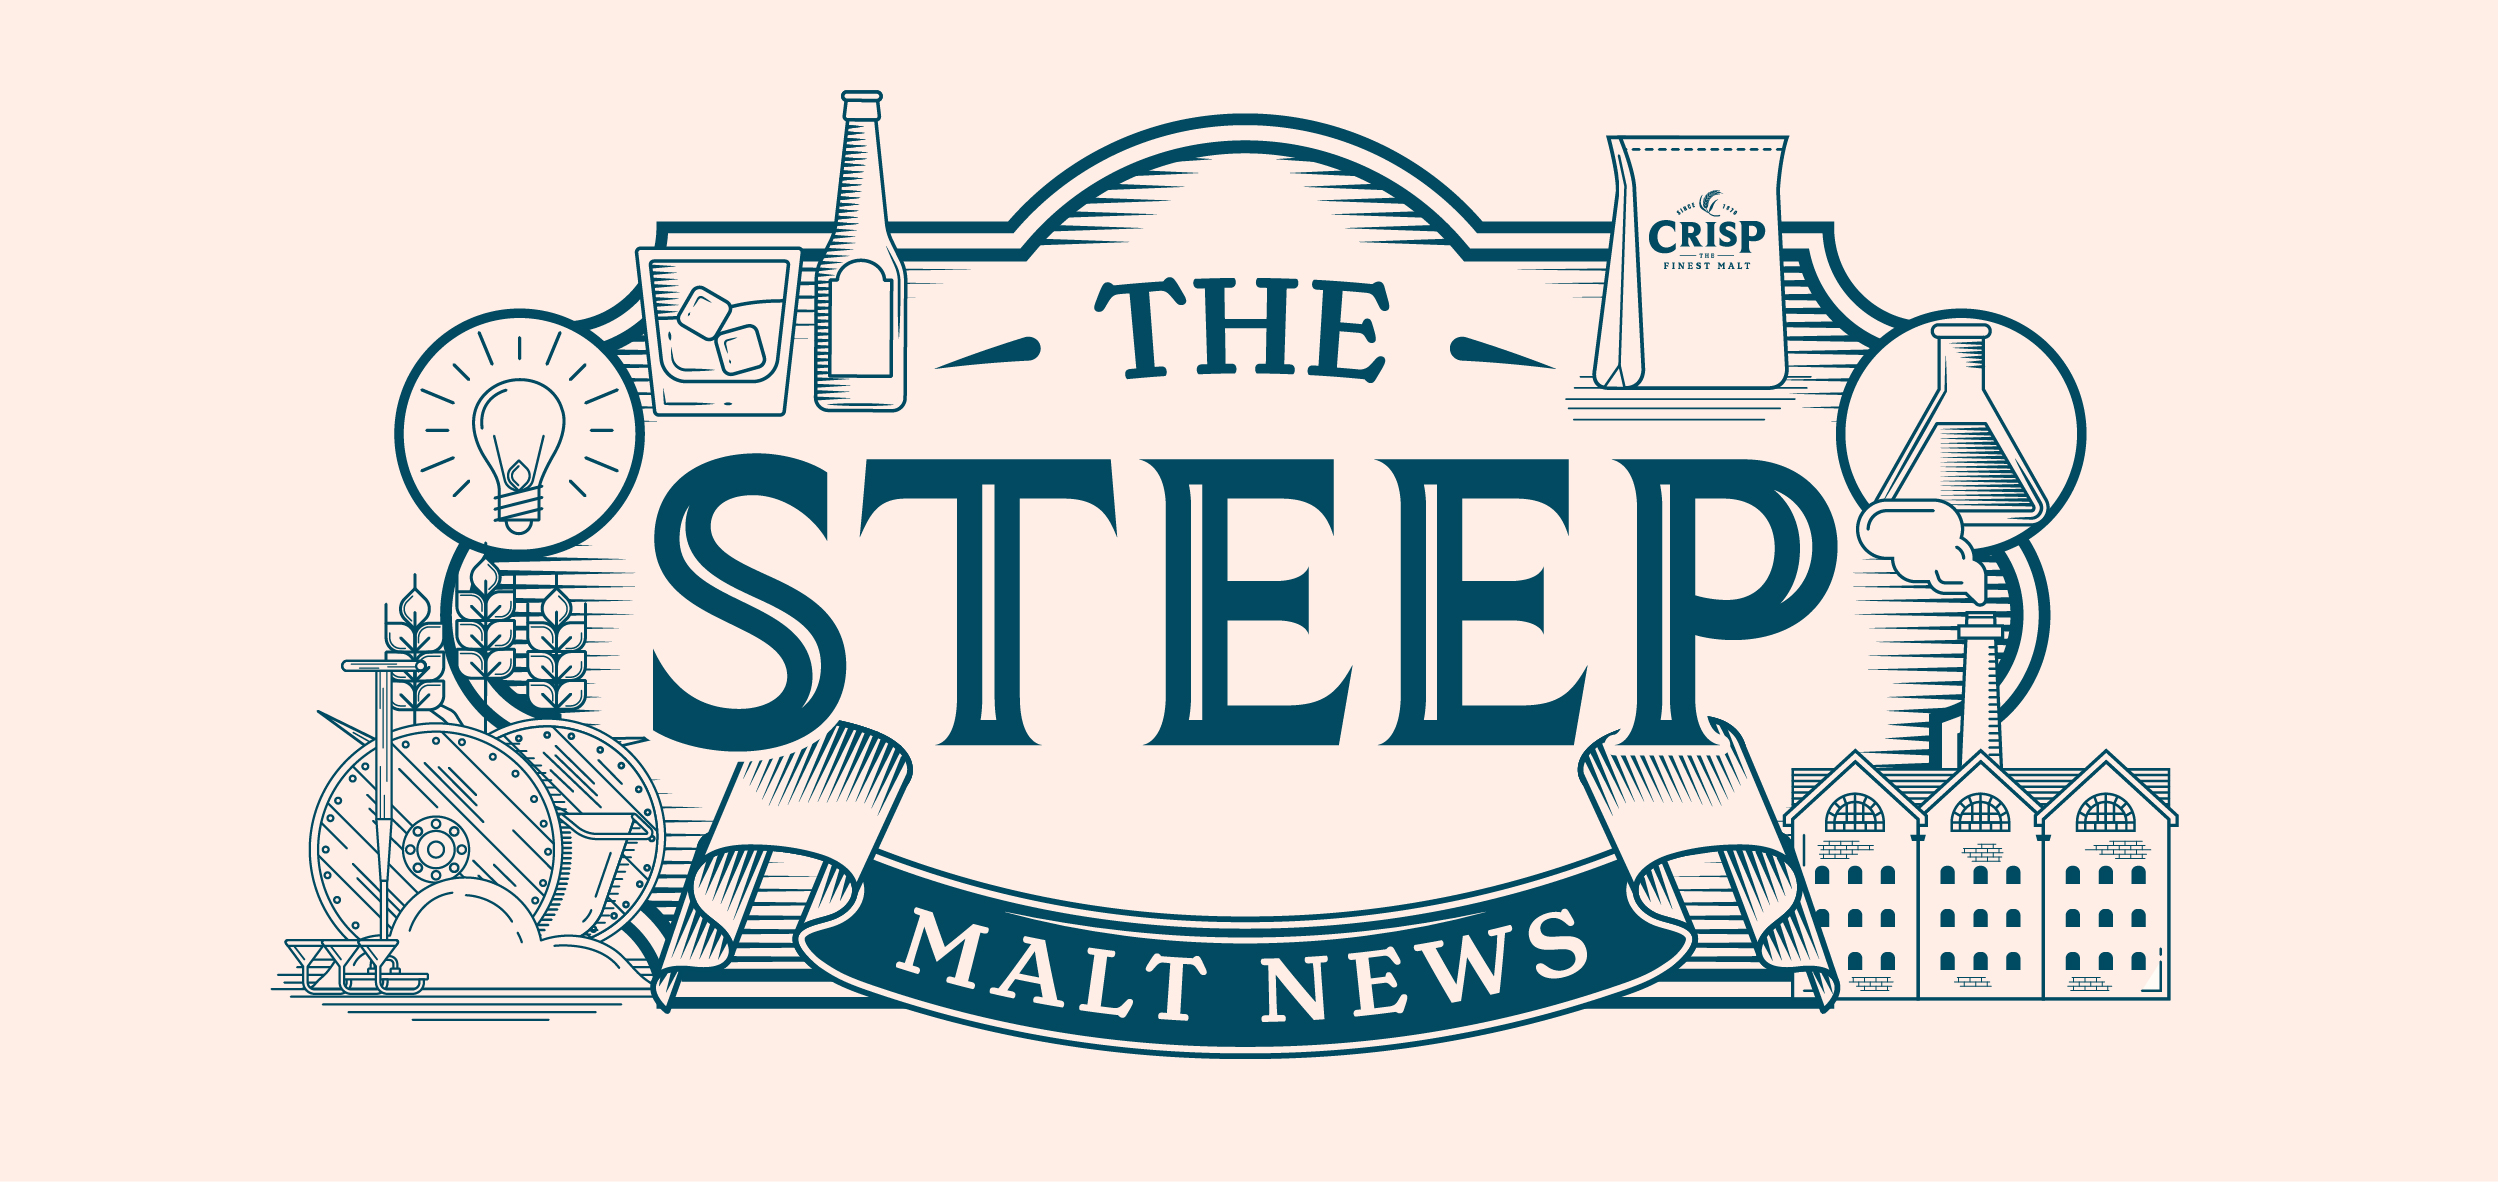 The Steep Newsletter from Crisp Malt